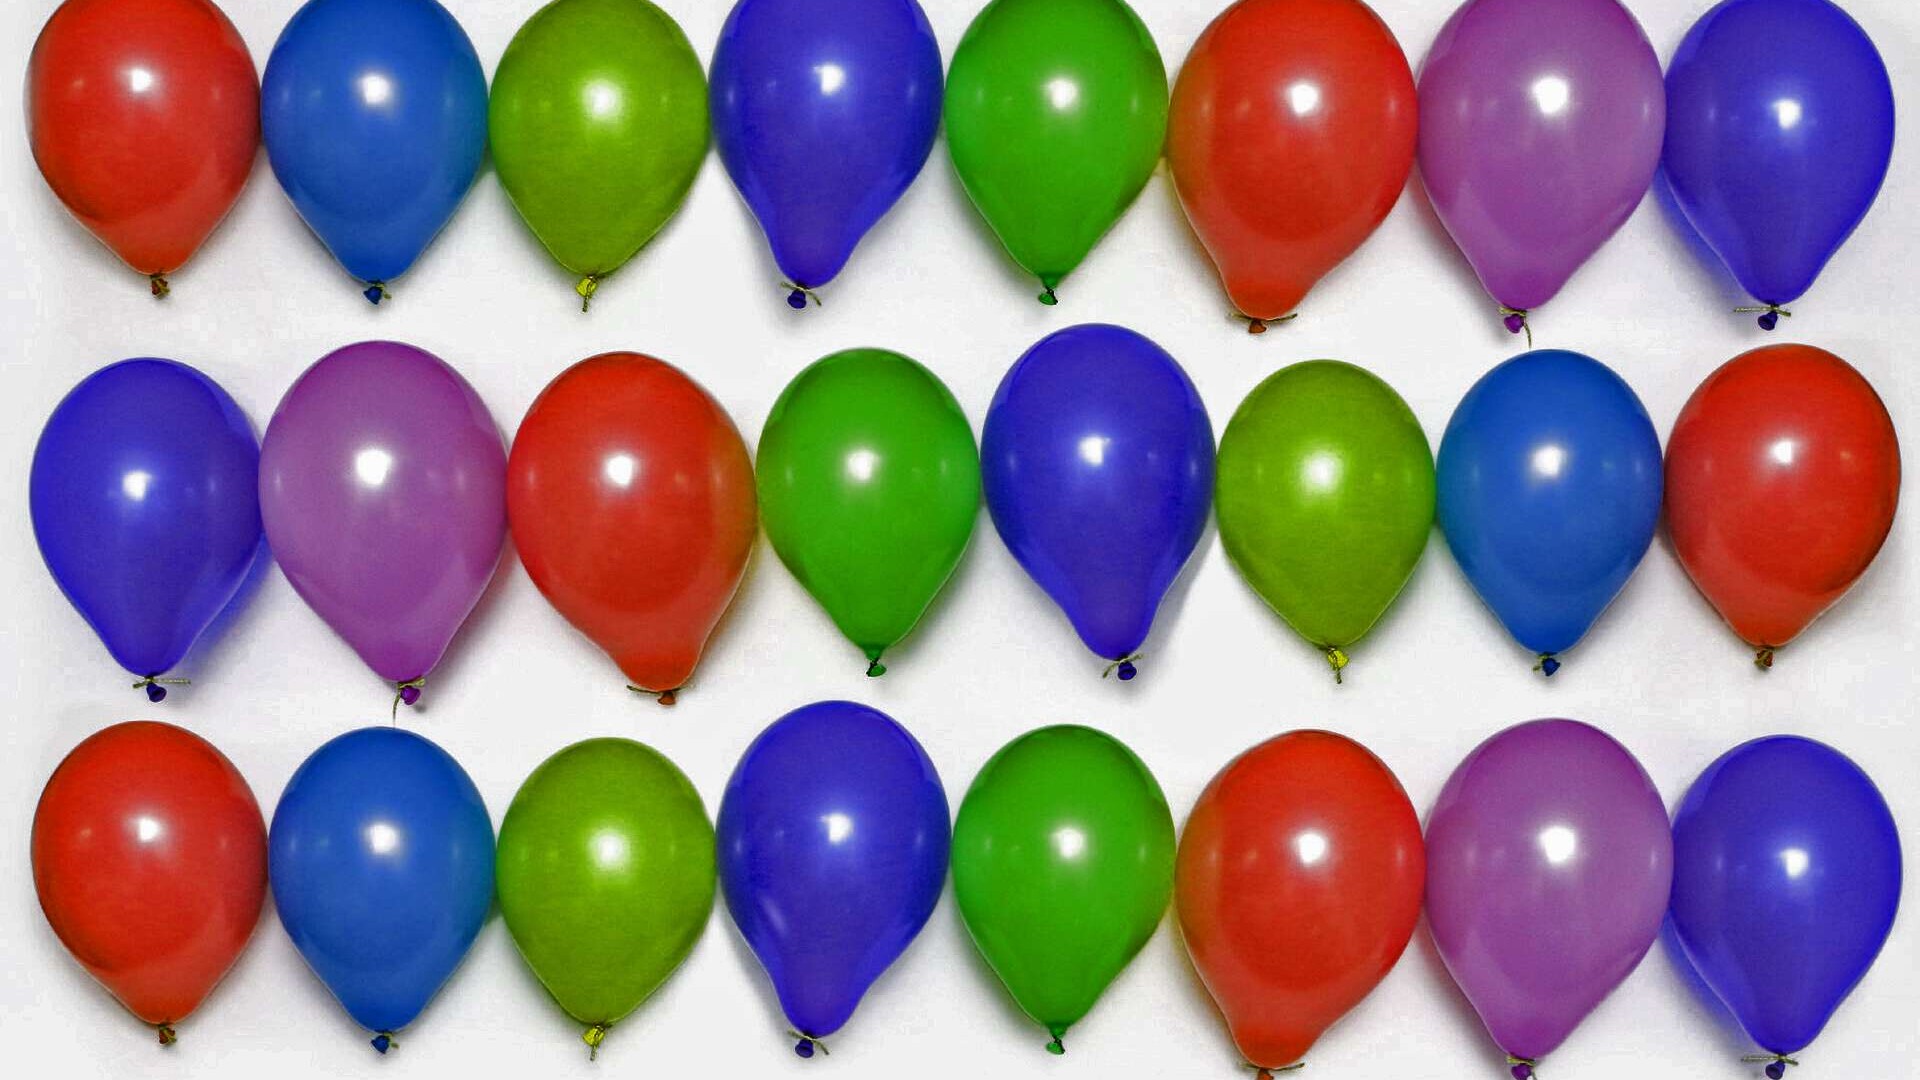 Mehrere Reihen bunter aufgeblasener Luftballons